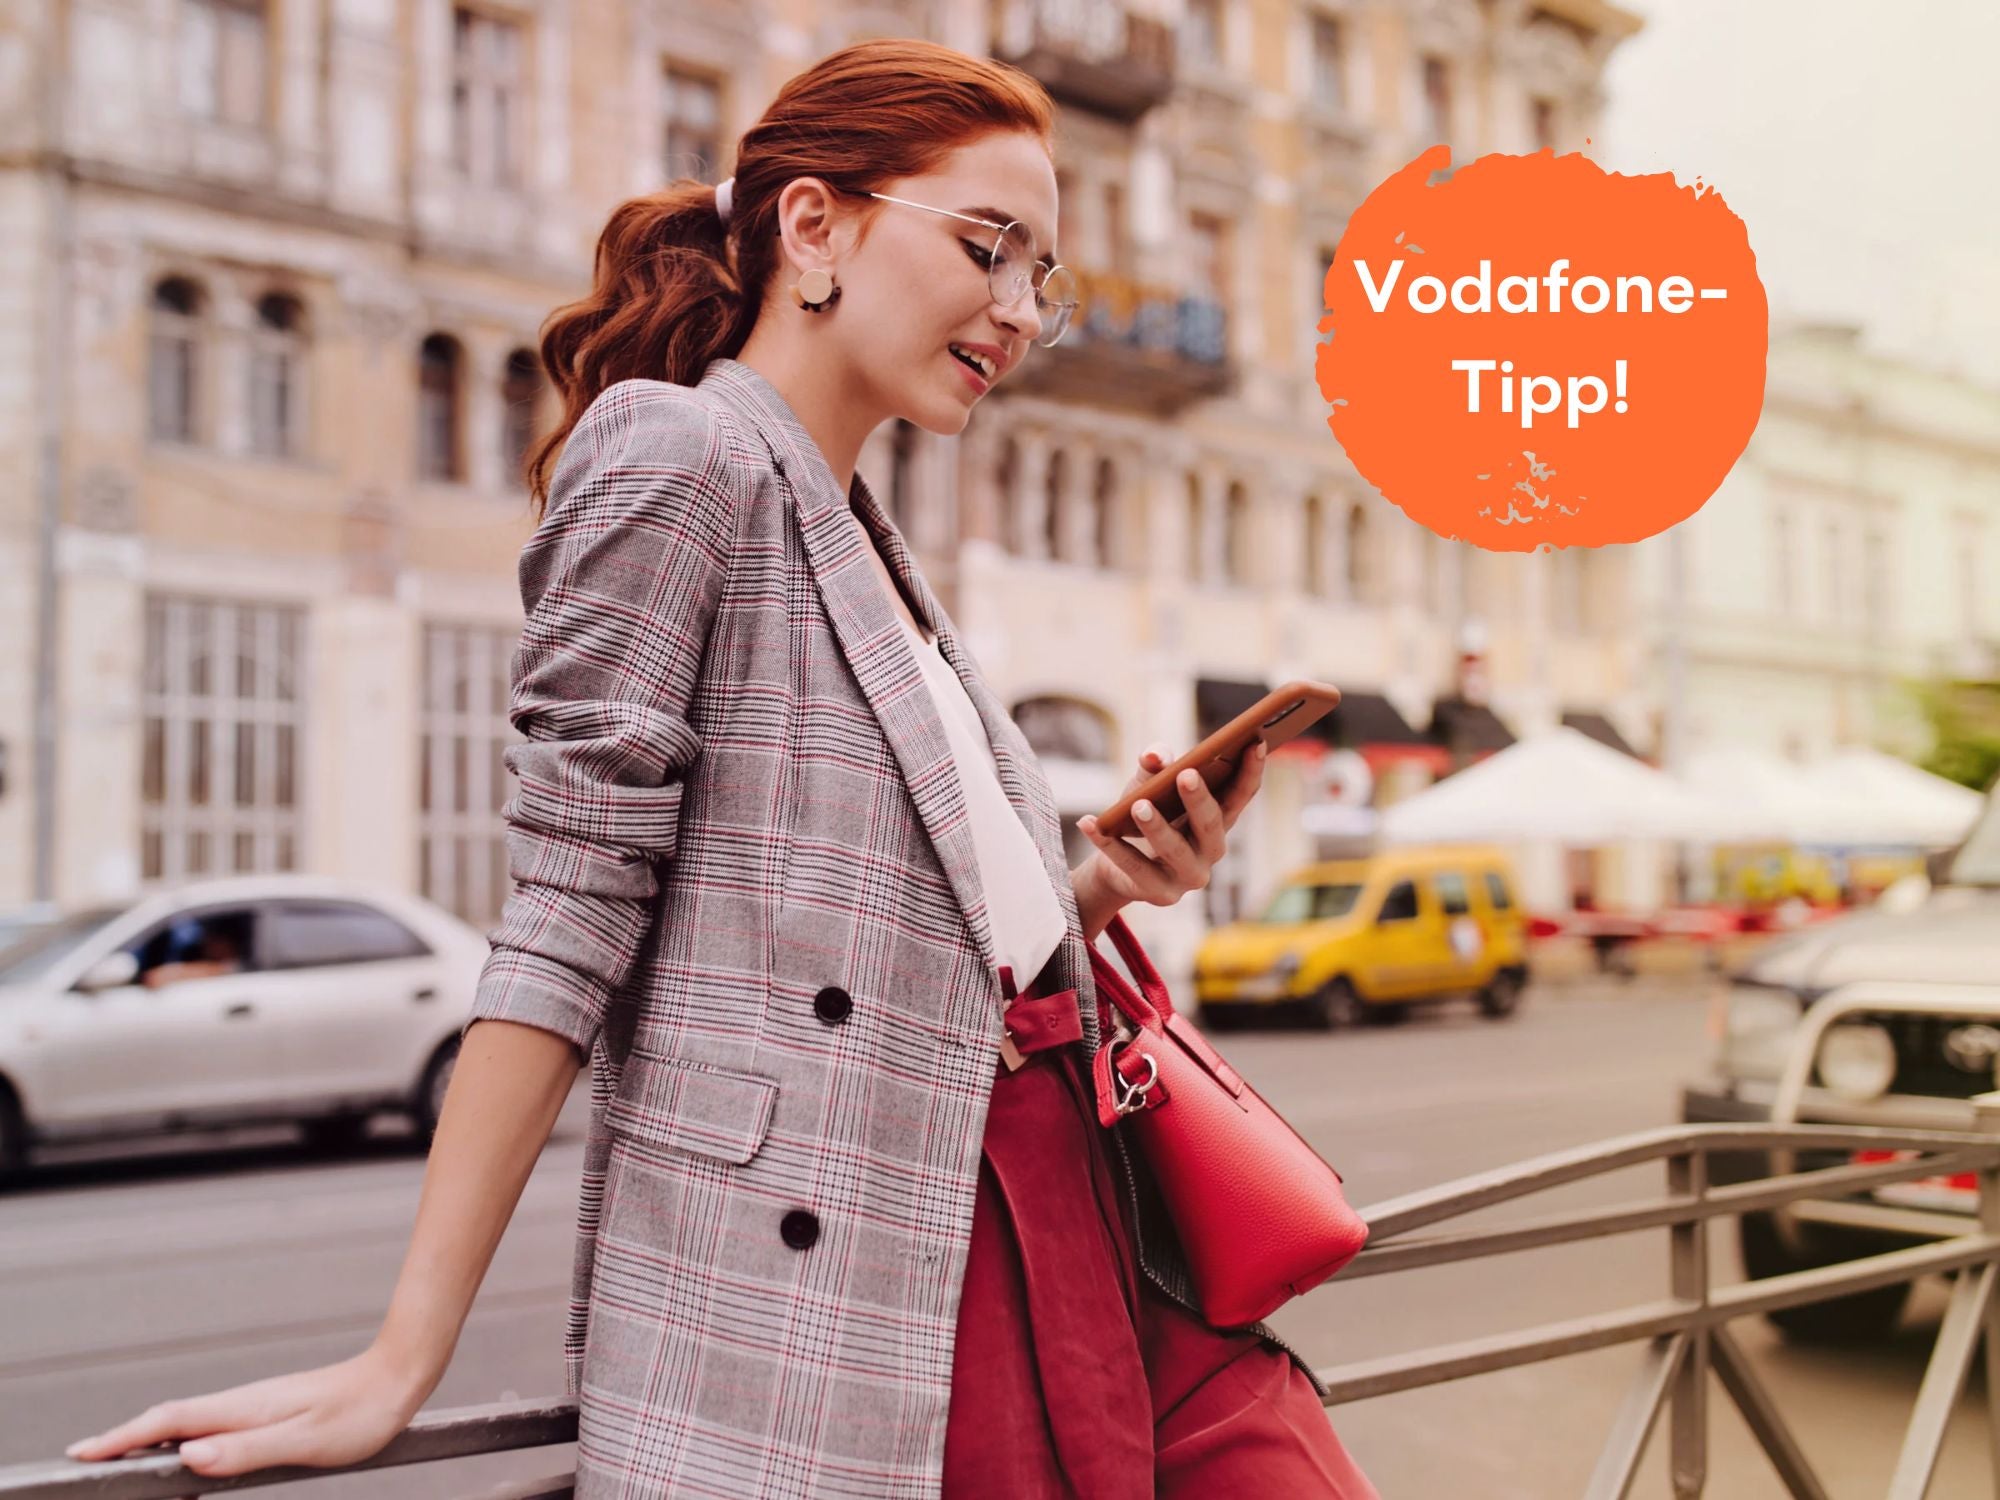 #Unter 6 Euro: Vodafone-Tarif wird mit interessantem Kniff im Preis gedrückt